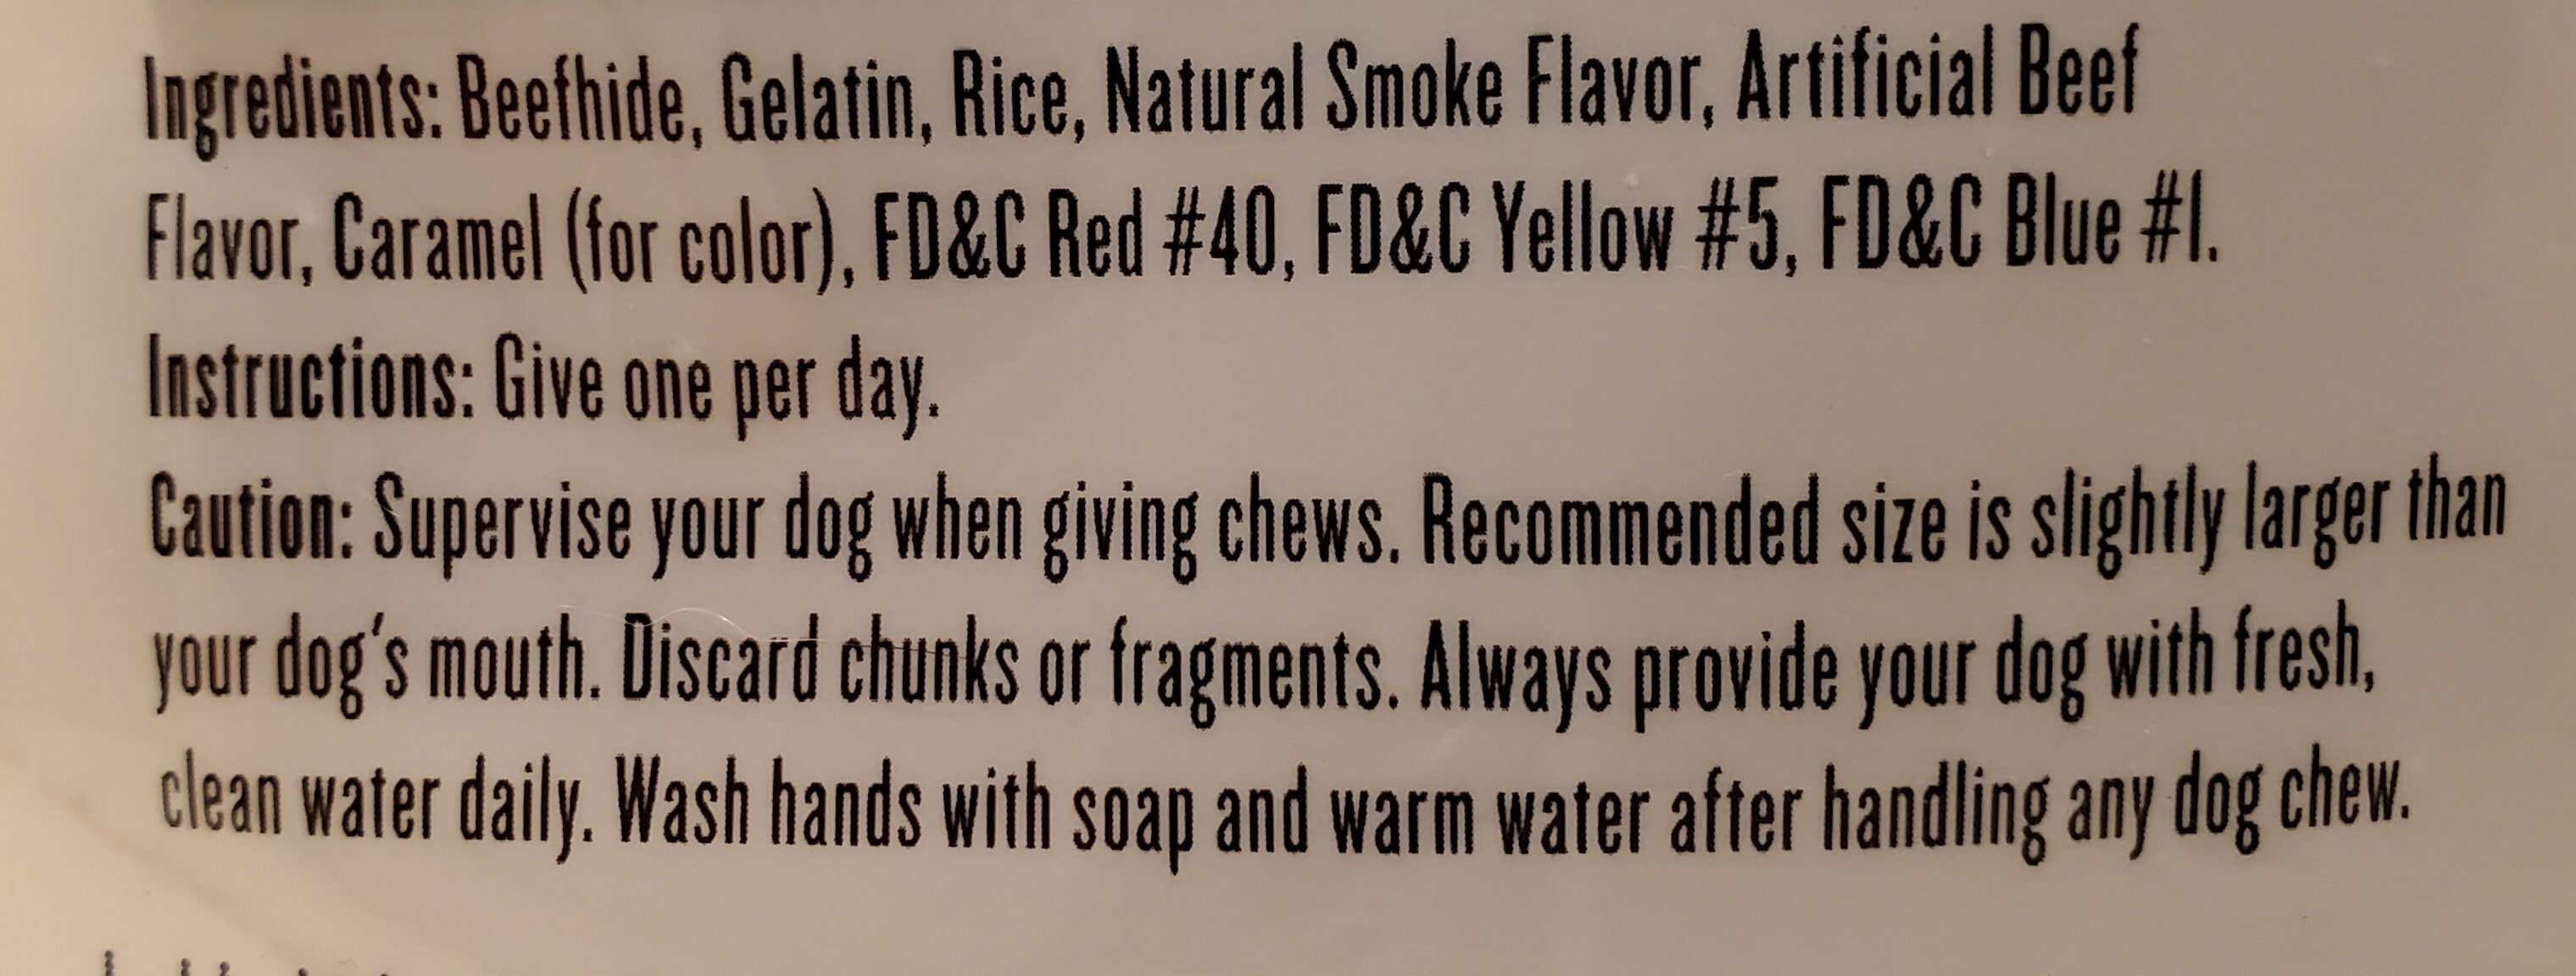 Smoky BBQ Flavor Twists - Ingredients - en